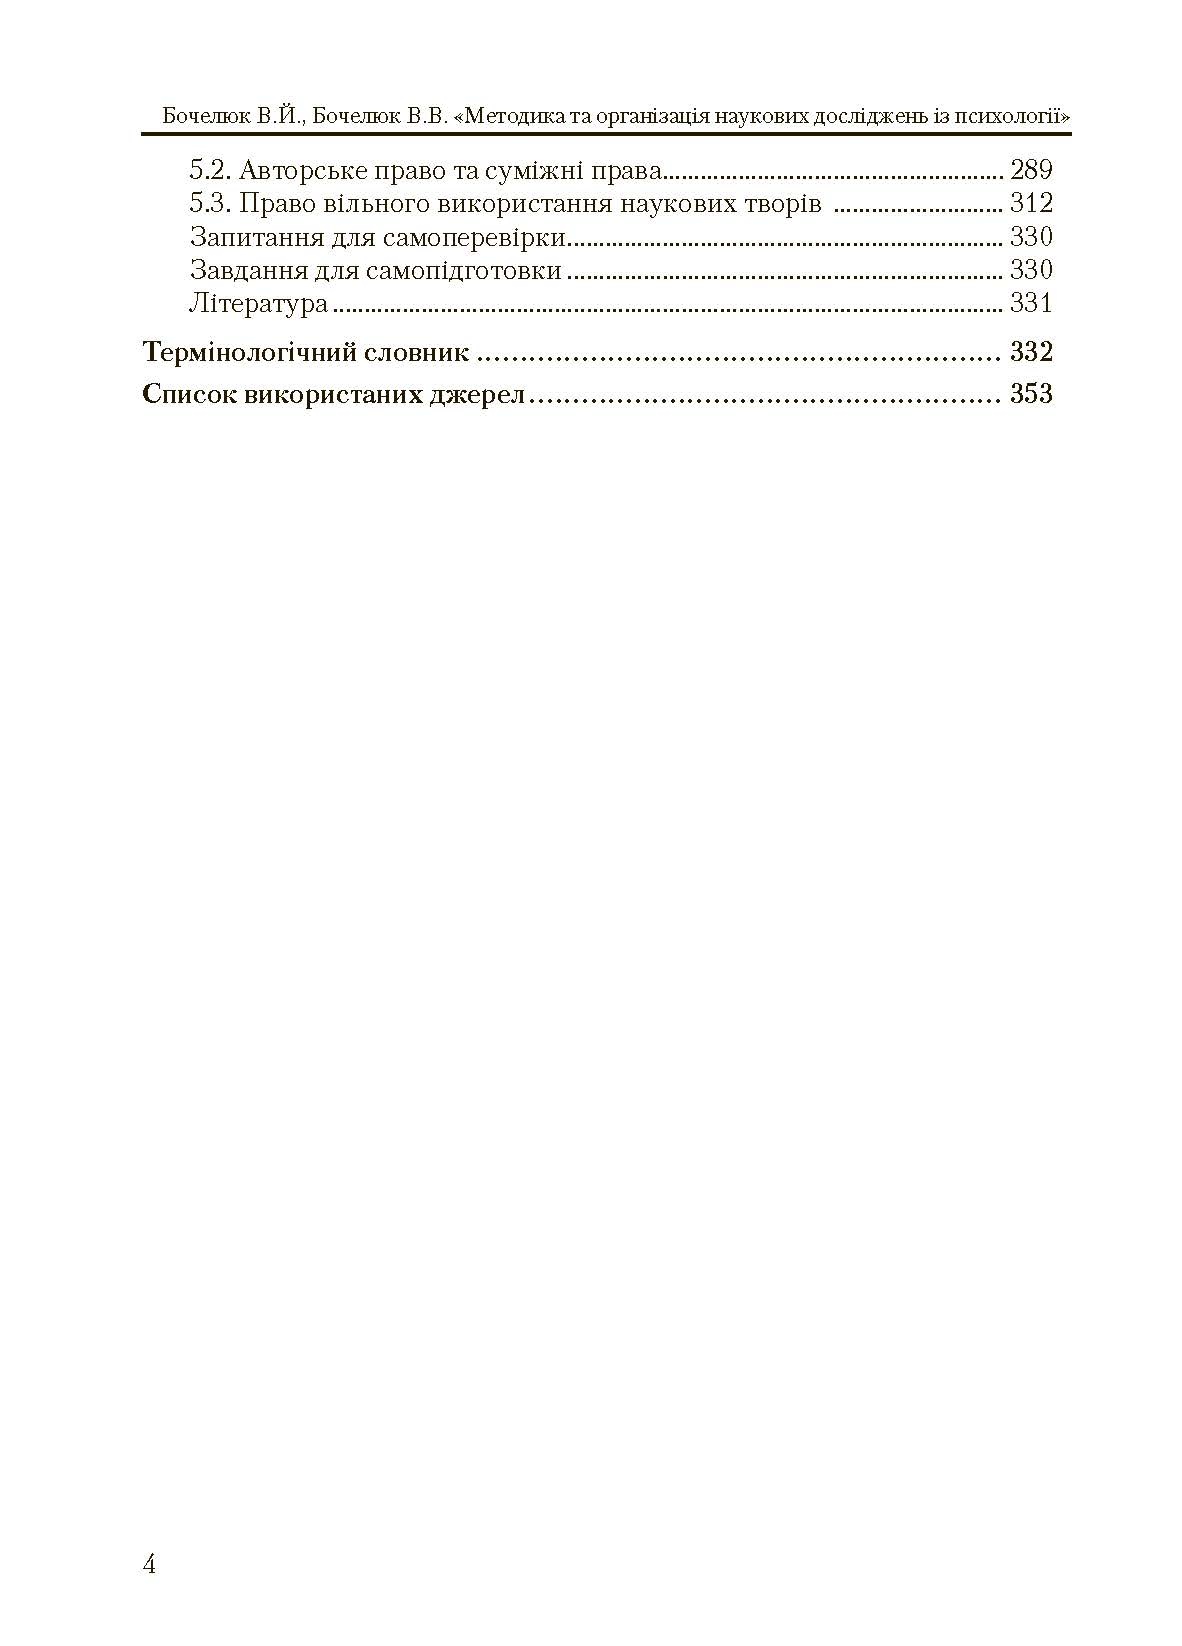 Методика та організація наукових досліджень з психології  (2019 год). Автор — Бочелюк В.Й.. 